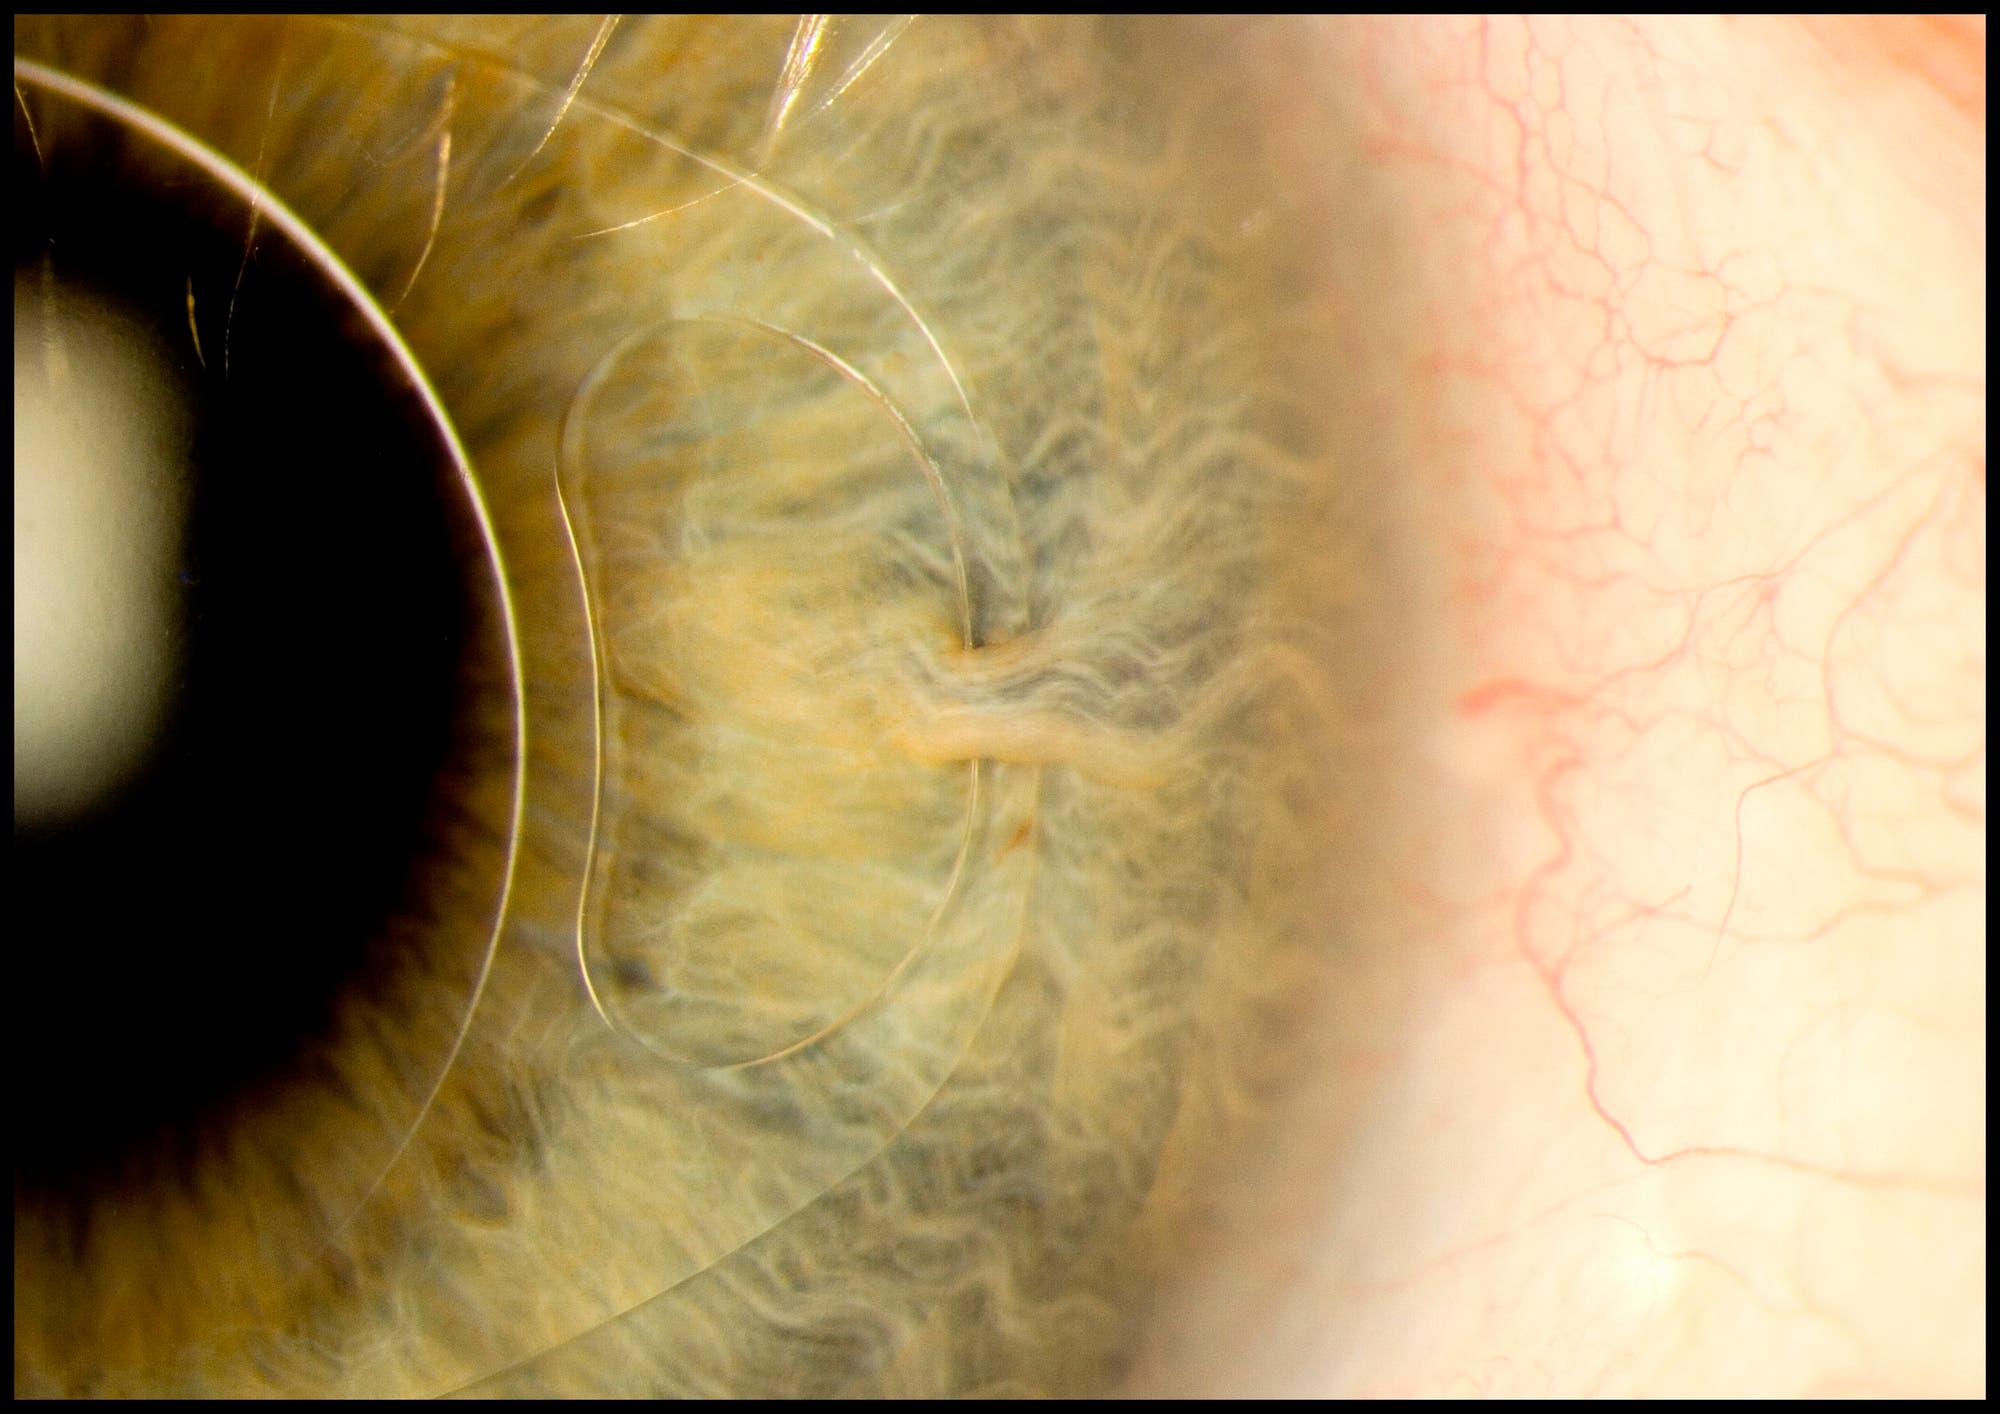 Iris-Clip-Linse im Auge